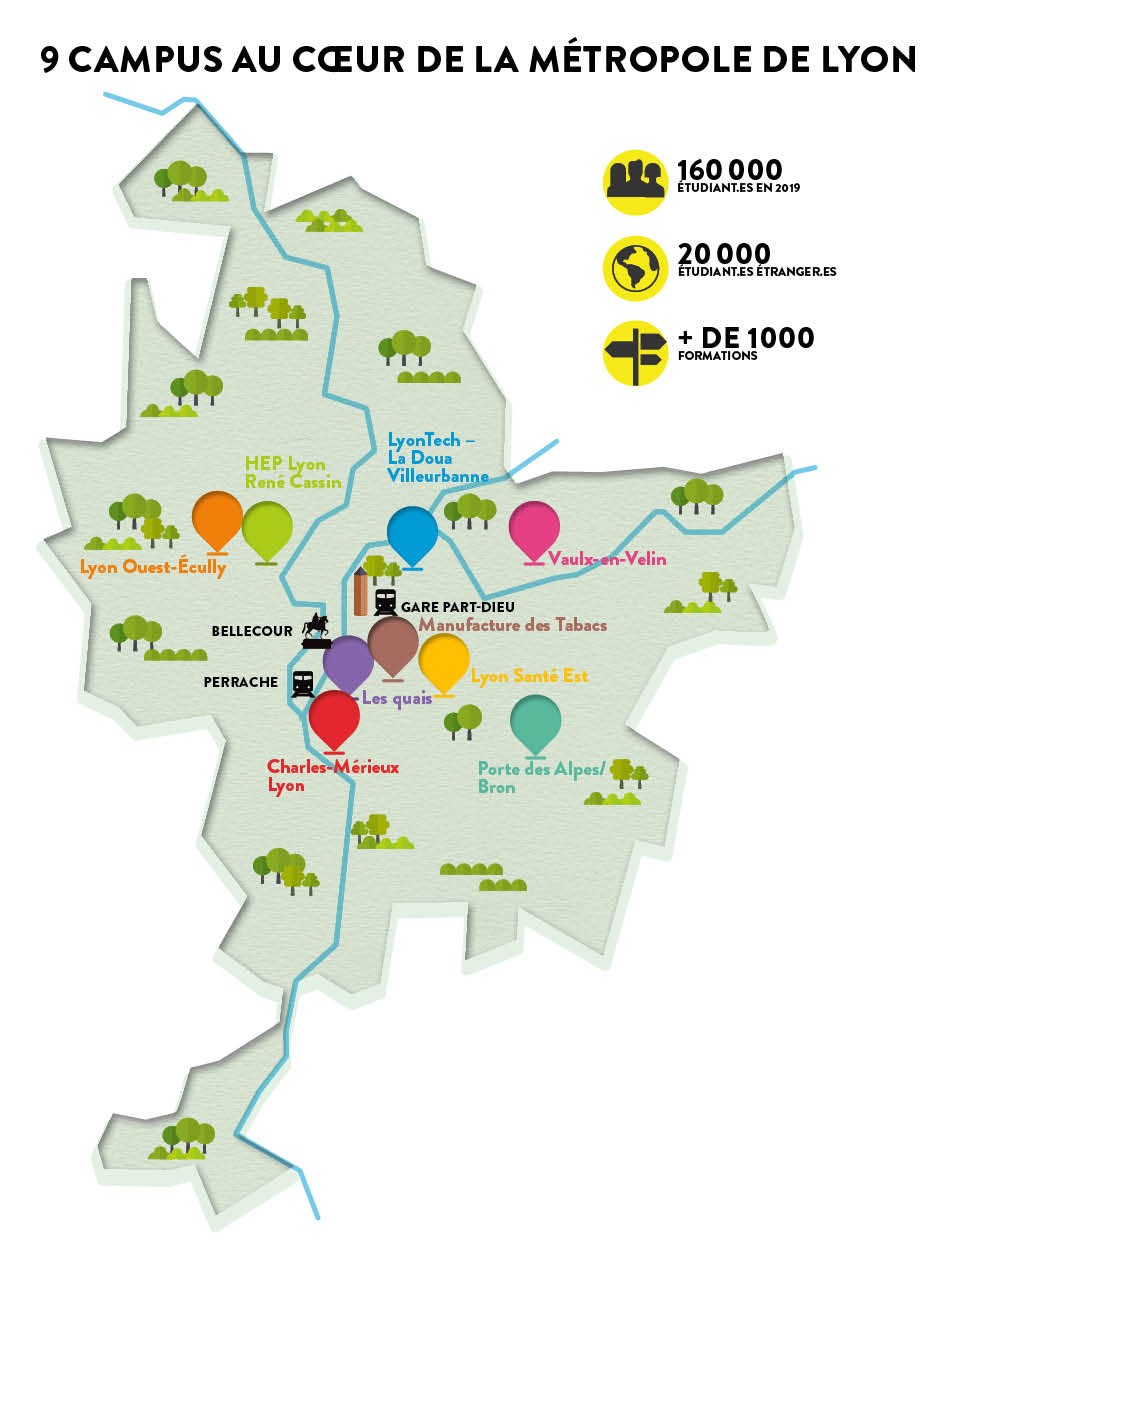 Un plan de la Métropole de Lyon renseigne la position géographique des 9 campus dans la Métropole de Lyon